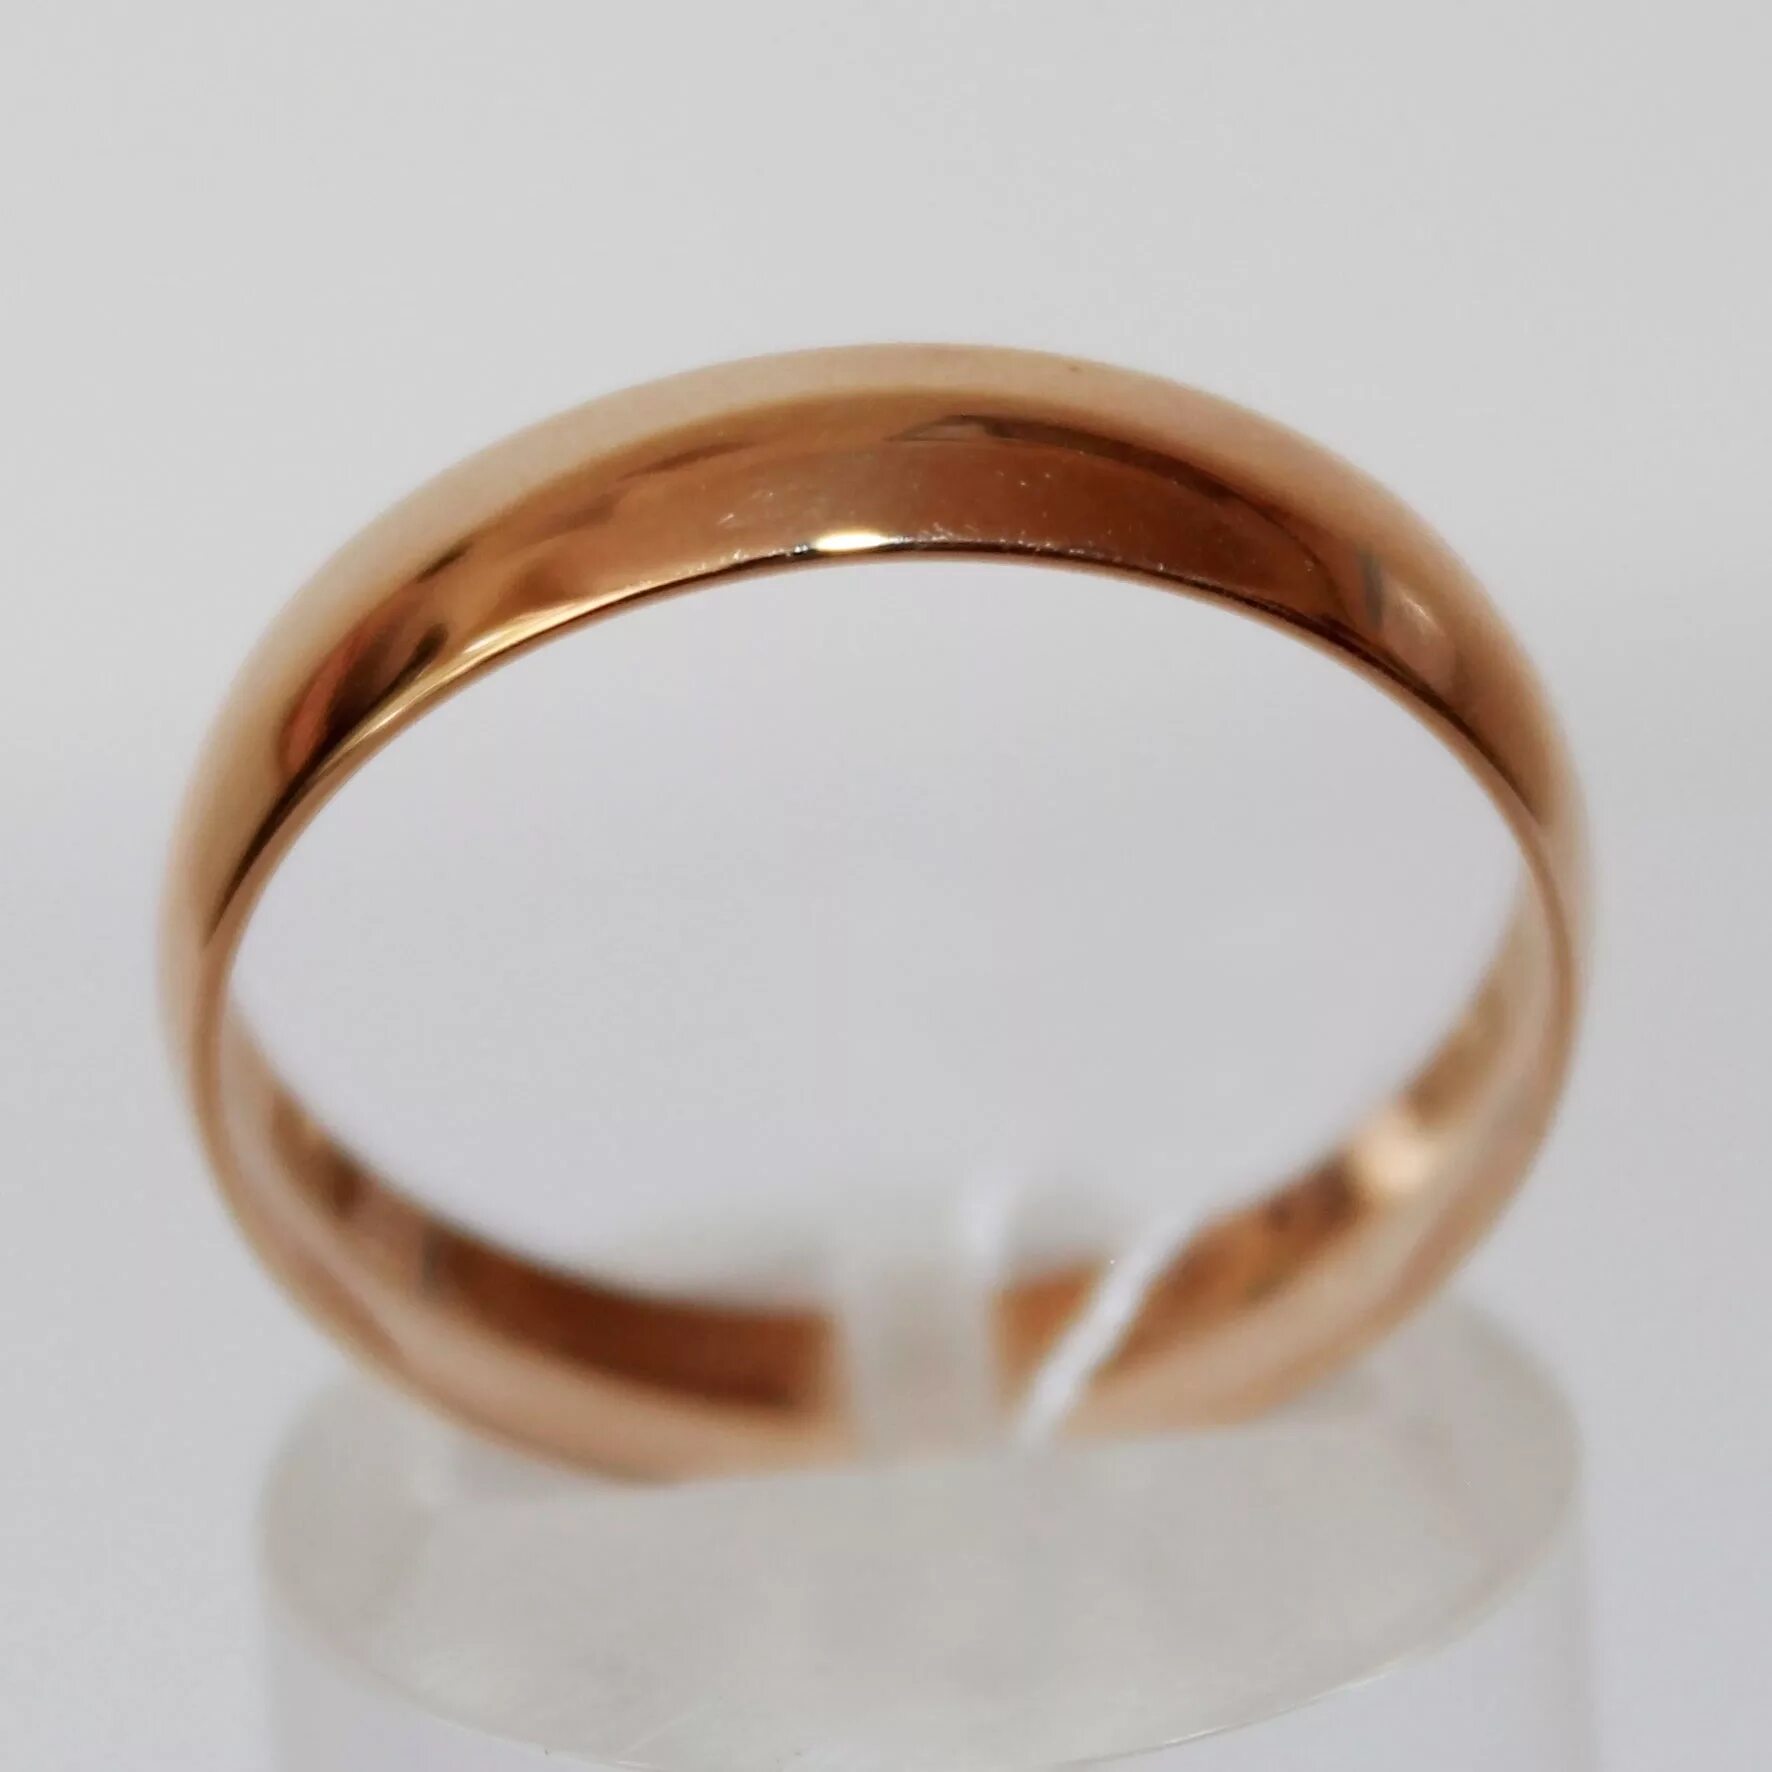 Найти золотое обручальное кольцо. Обручальное кольцо 585 пробы комфорт 4 мм. Кольца обручальные 585 пробы классические. Обручальное кольцо классика жёлтое золото ширина 4 мм. Адамас гладкие обручальные кольца 585 пробы.